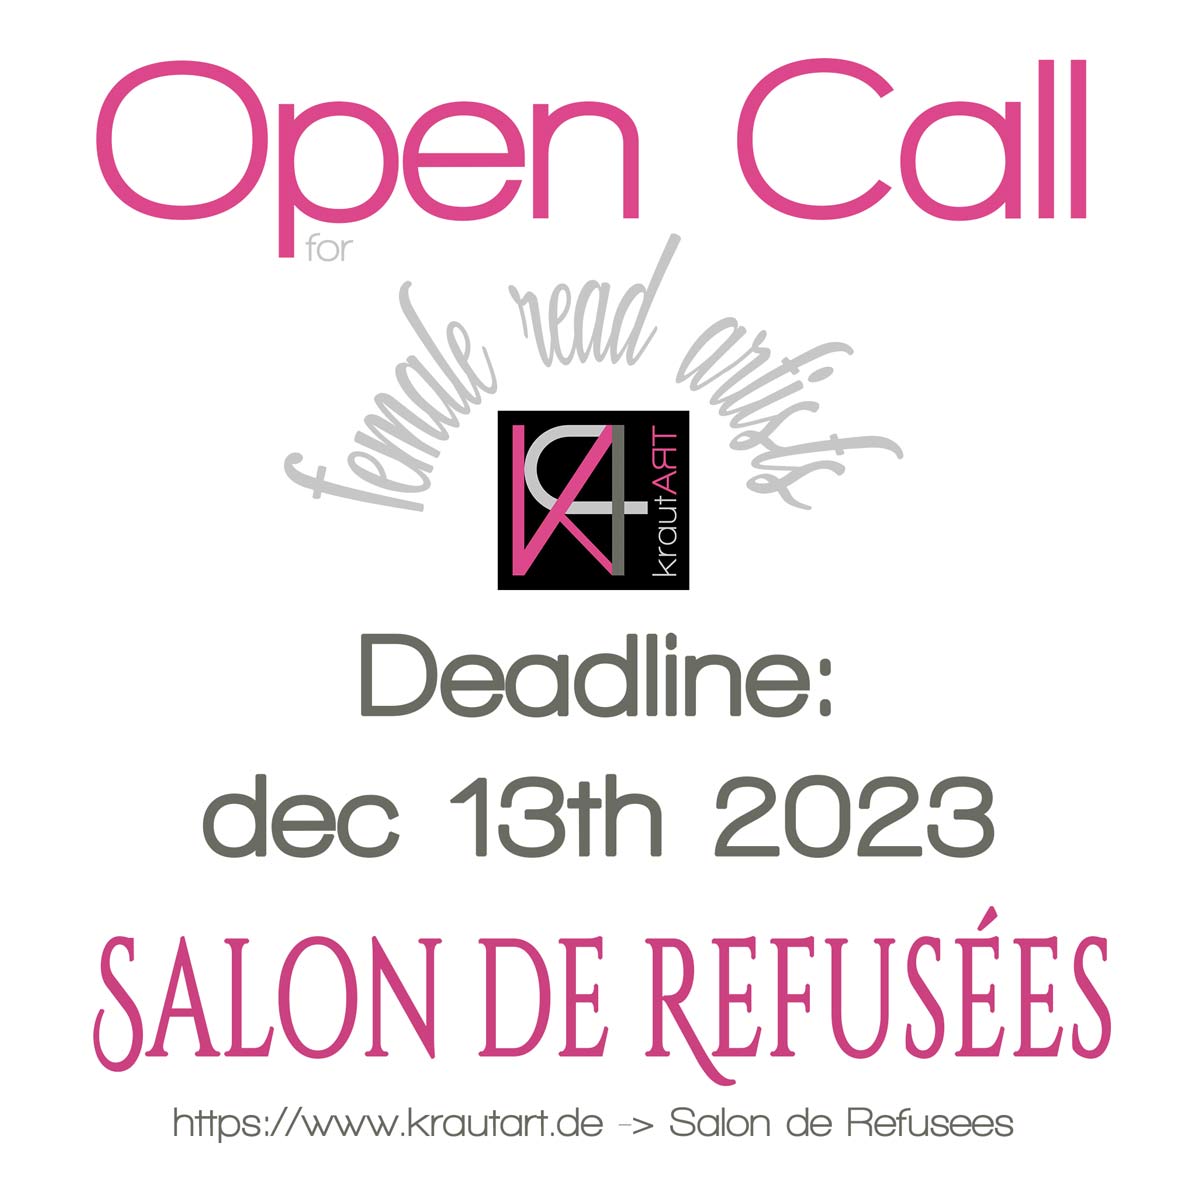 Press Release: Salon de Refusées Open Call